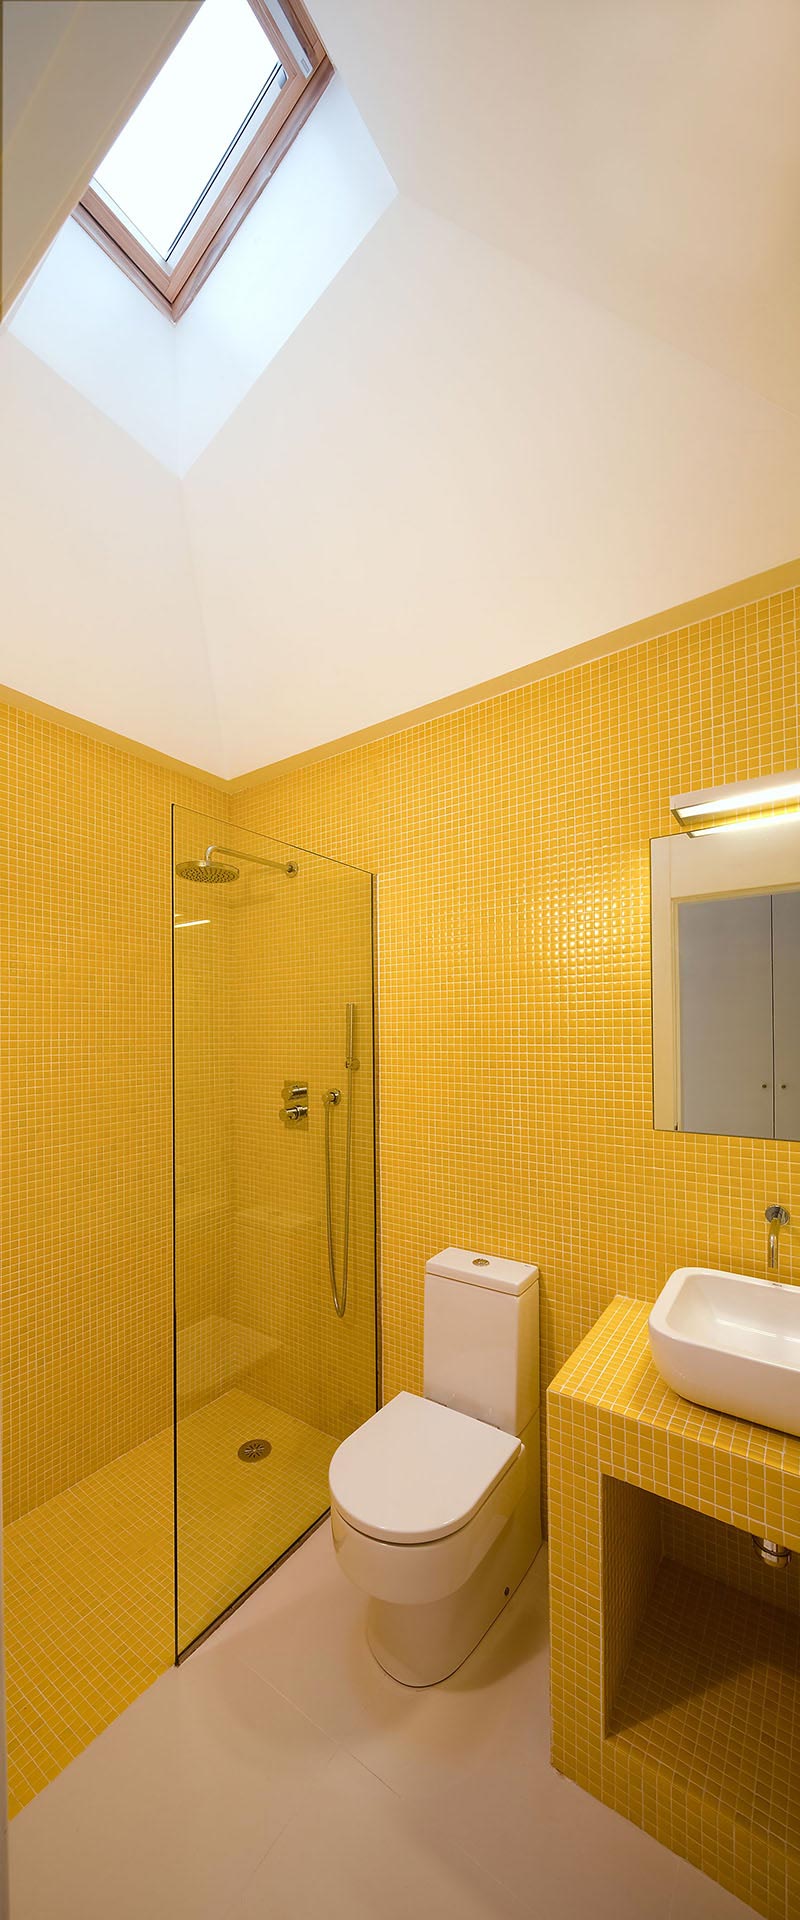 Baño con gresite amarillo de casa moderna diseñada por Moah Arquitectos en Villaverde